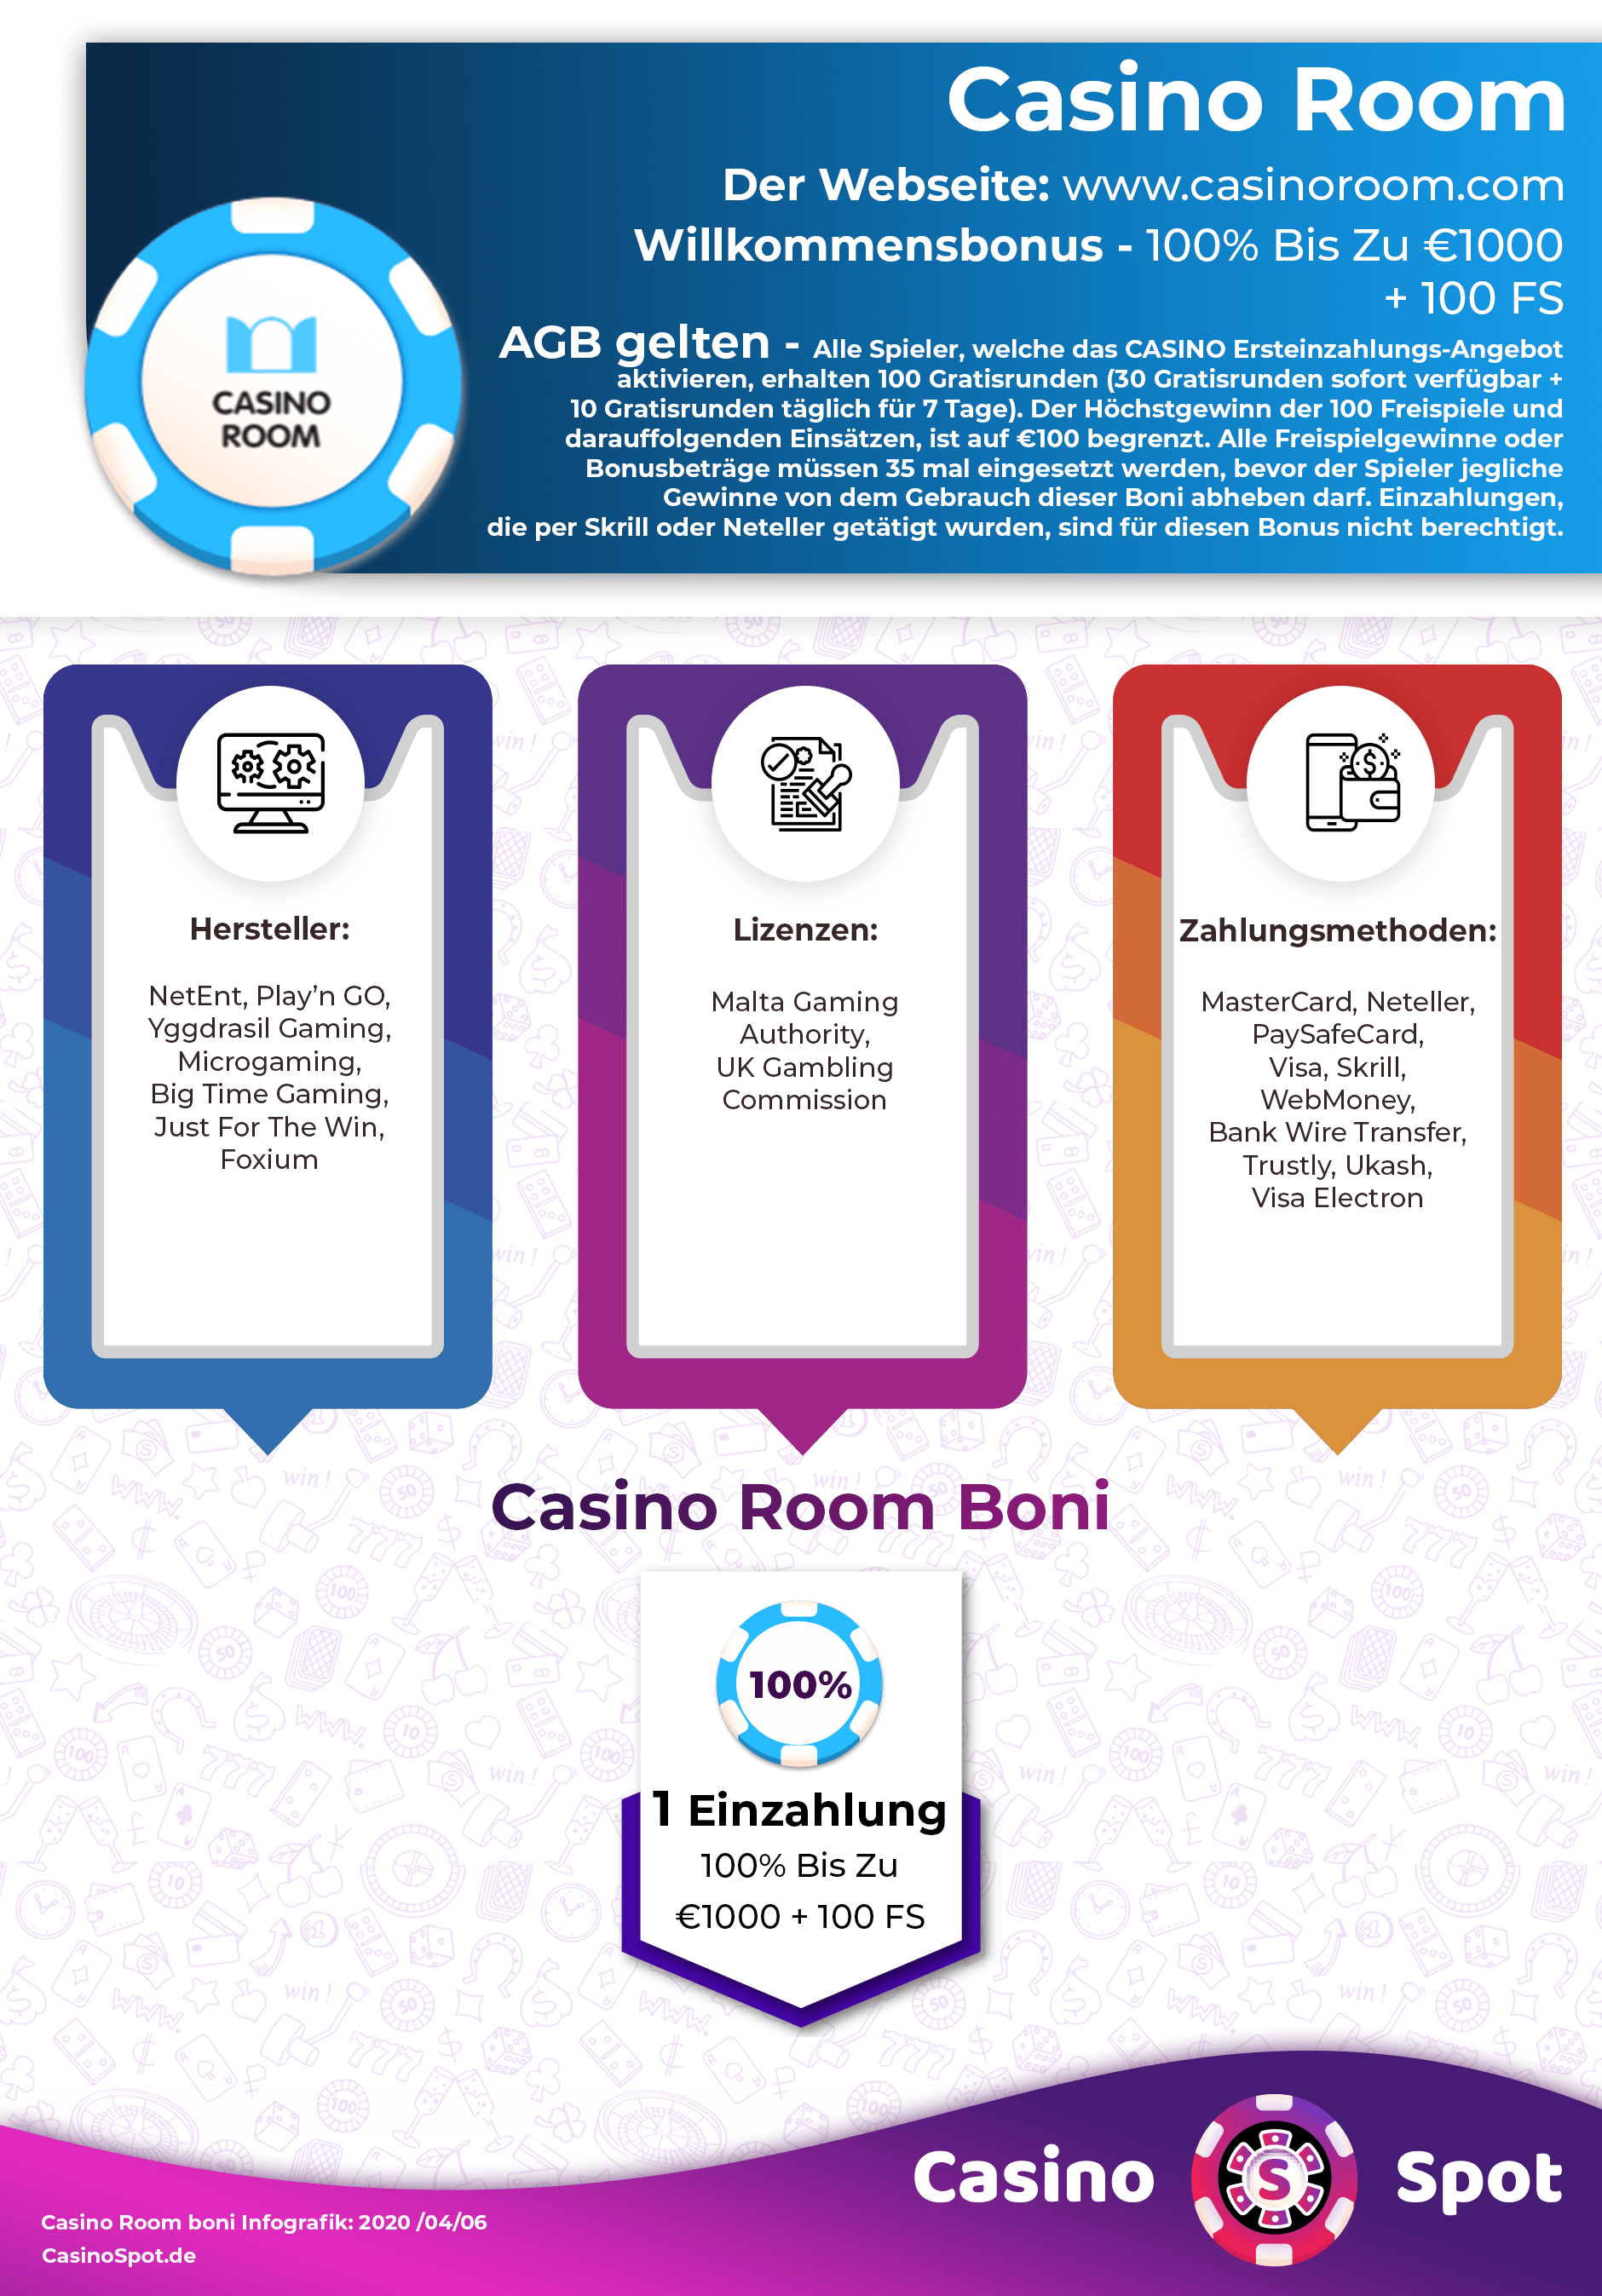 Casino Room Bonus Code No Deposit